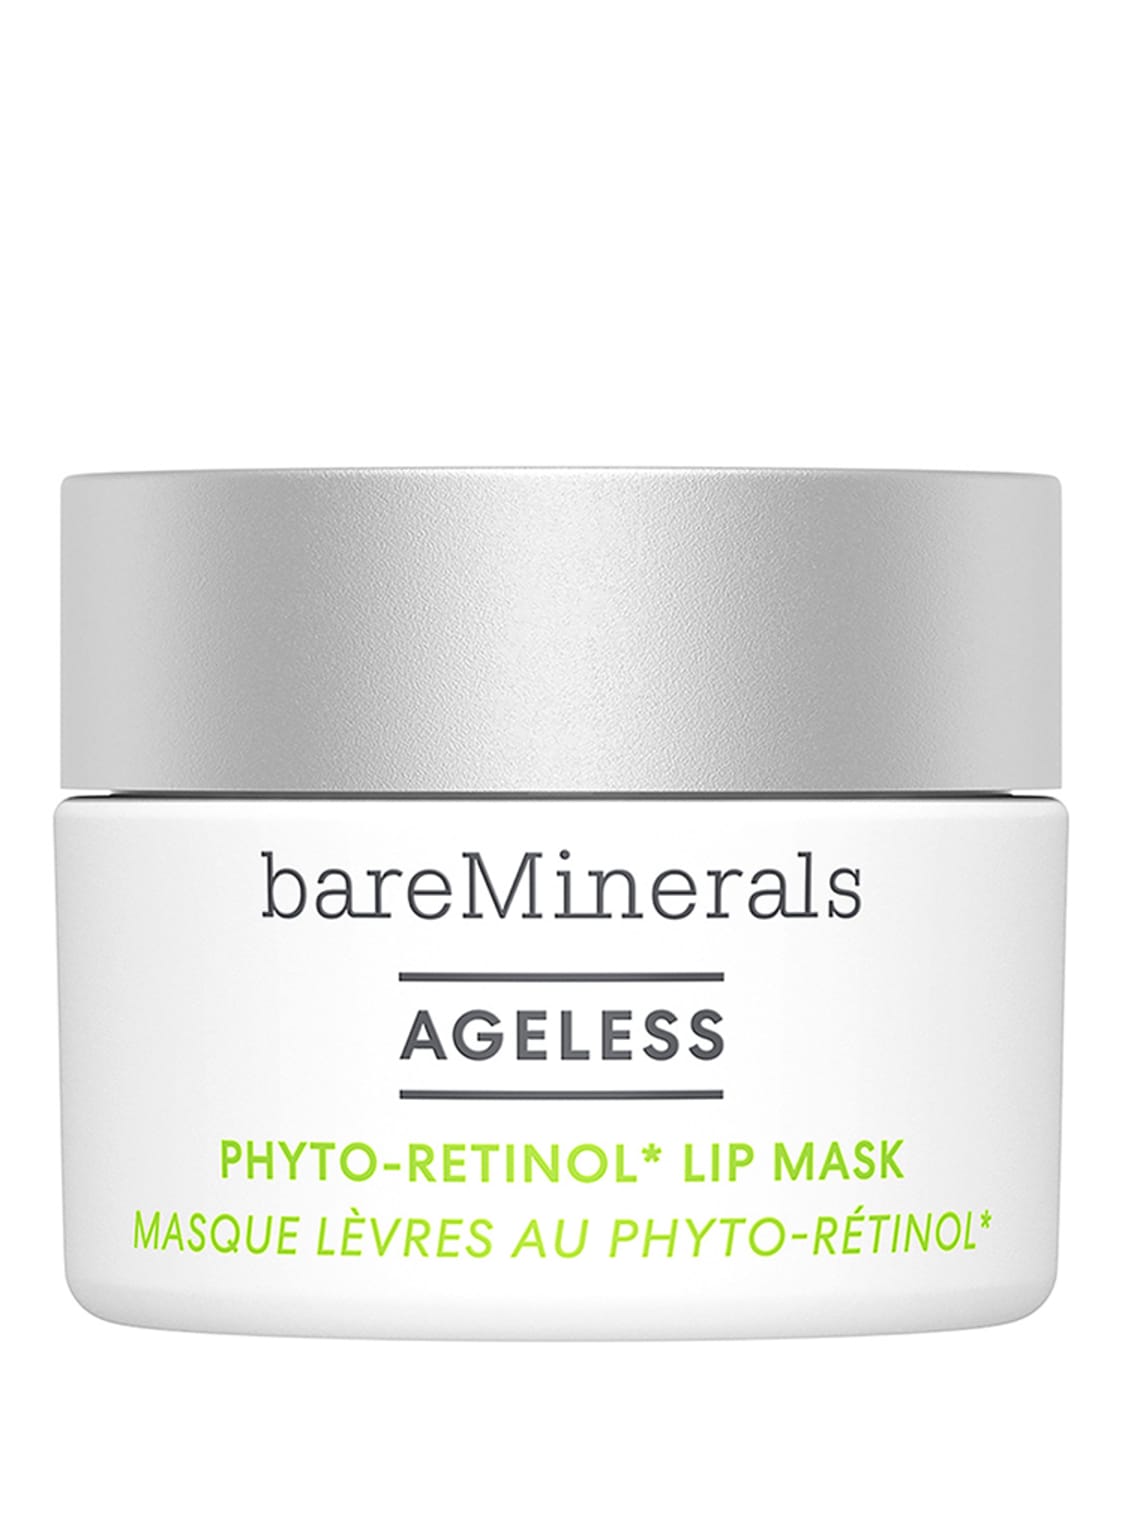 Bareminerals Ageless Phyto Retinol Lip Mask 13 g von bareMinerals